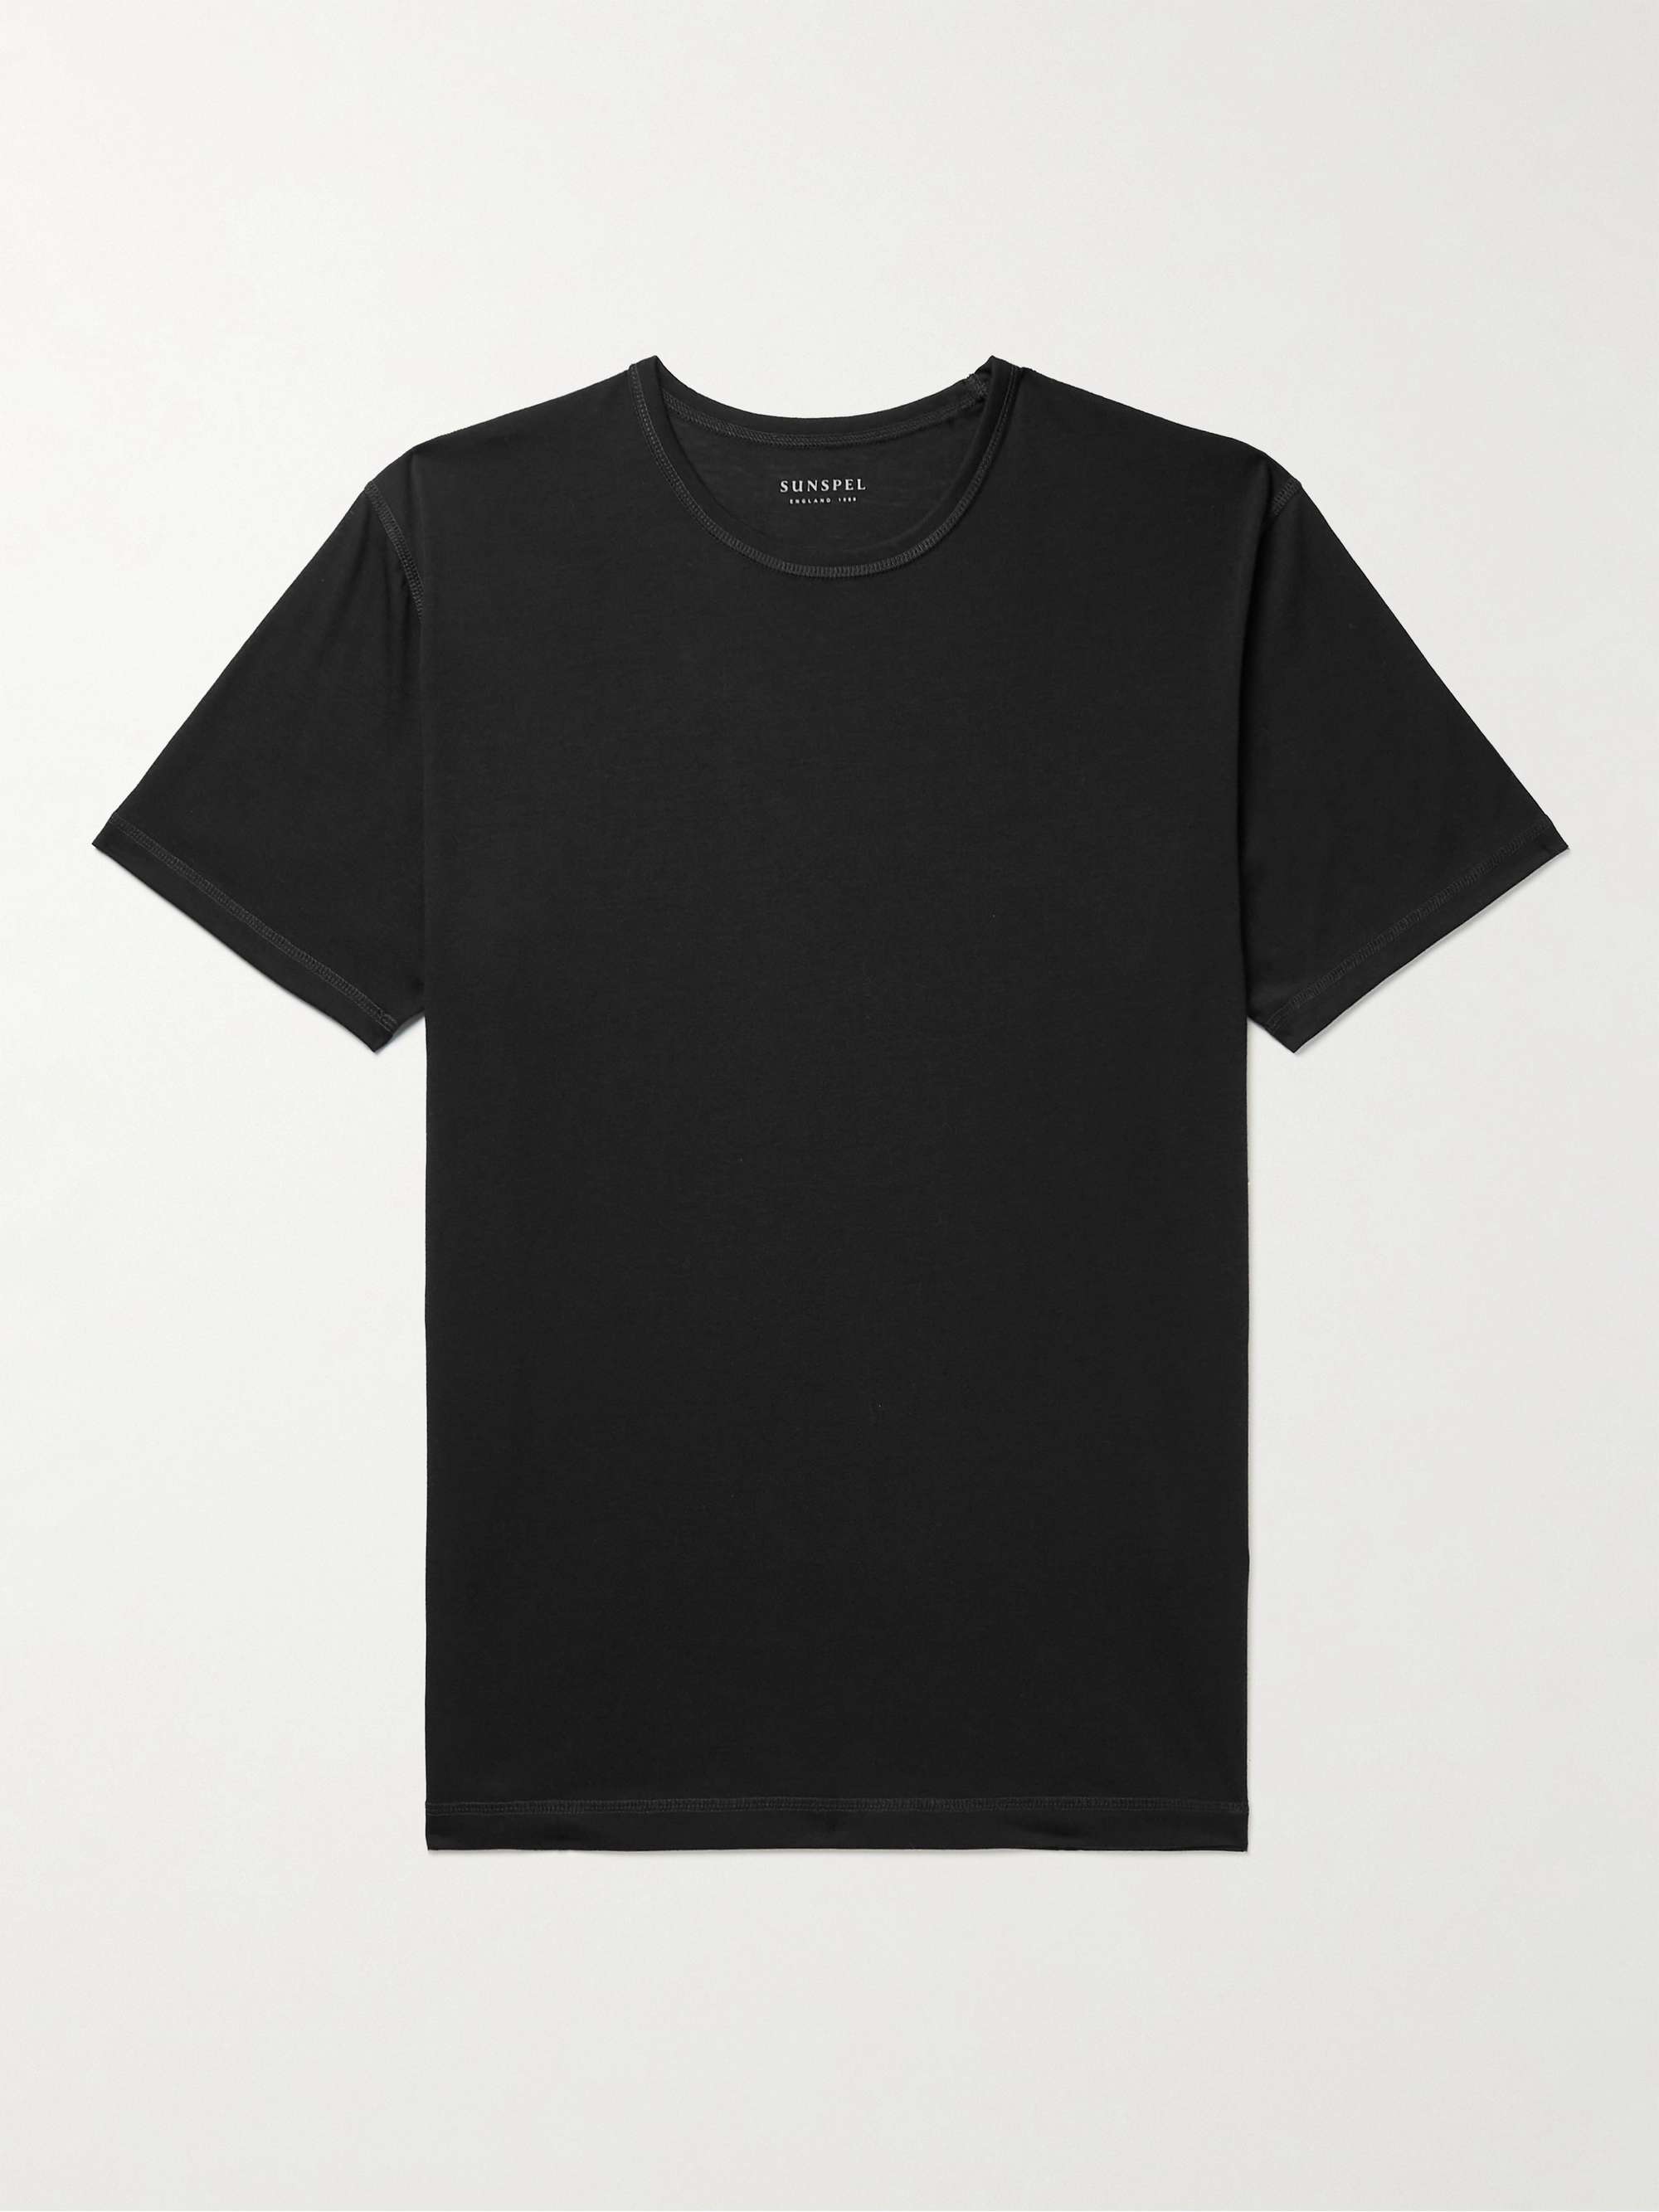 SUNSPEL Dri-Release Active Jersey T-Shirt